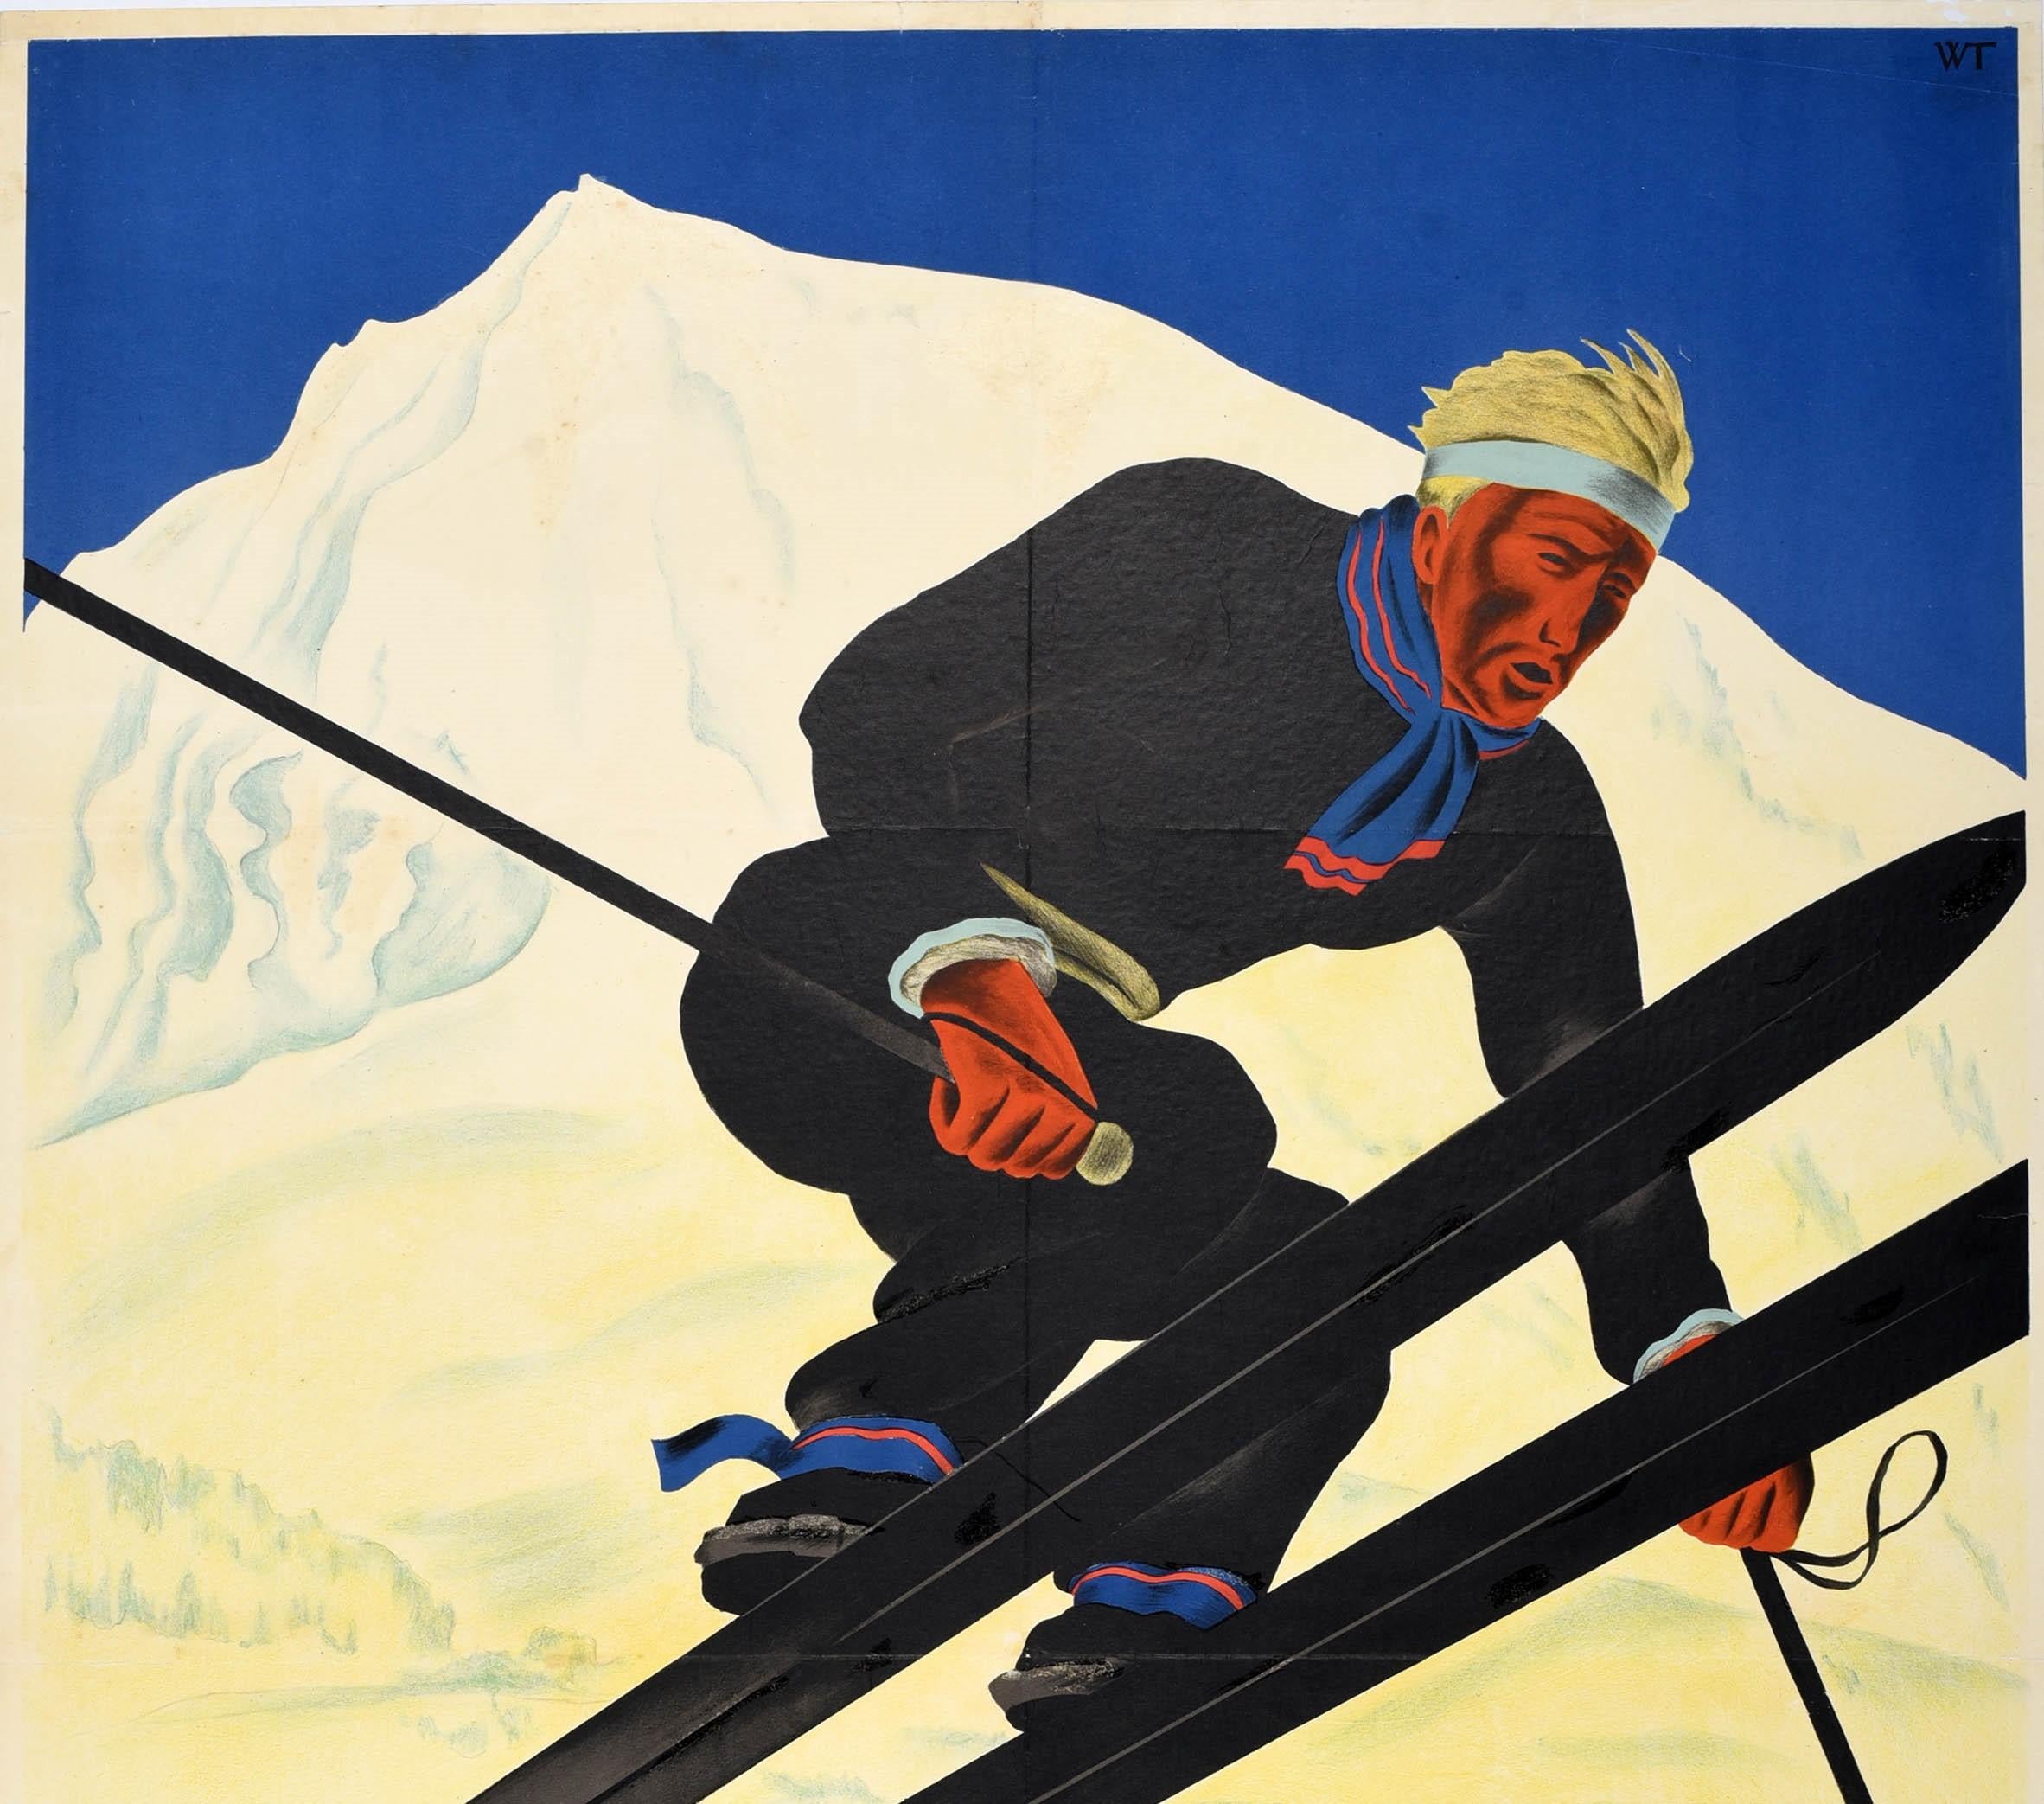 Affiche originale de voyage pour le ski et les sports d'hiver dans le village alpin suisse de l'Oberland bernois - Adelboden Suisse 1400m - avec un dessin dynamique de Willy Trapp (1905-1984) représentant un skieur portant une tenue noire, une